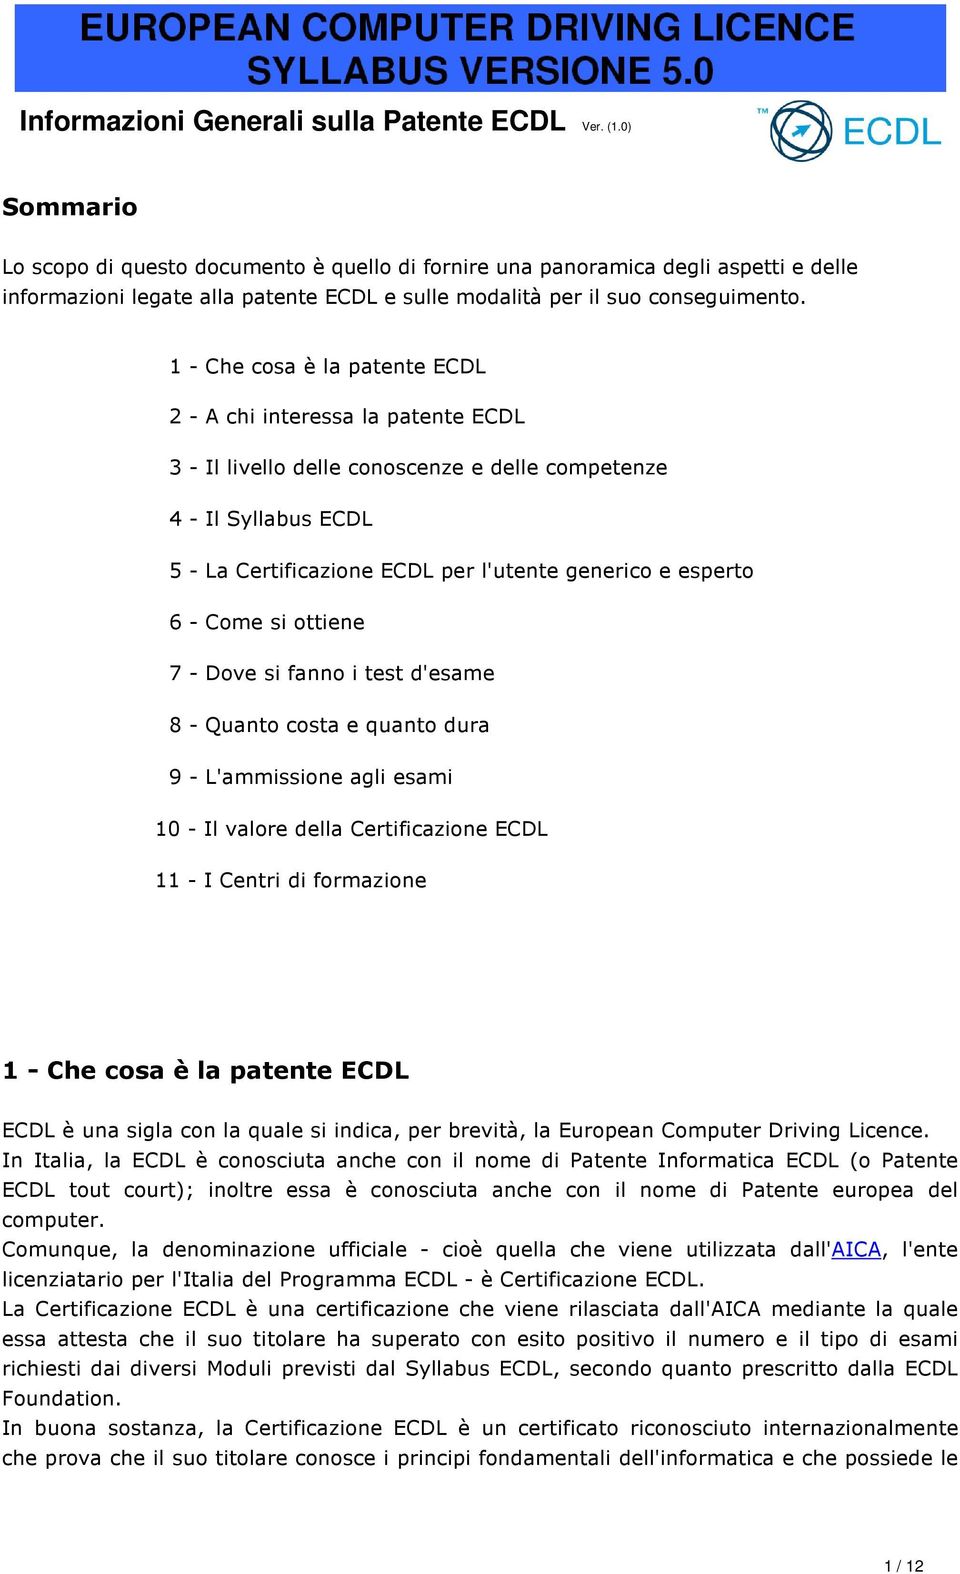 1 - Che cosa è la patente ECDL 2 - A chi interessa la patente ECDL 3 - Il livello delle conoscenze e delle competenze 4 - Il Syllabus ECDL 5 - La Certificazione ECDL per l'utente generico e esperto 6